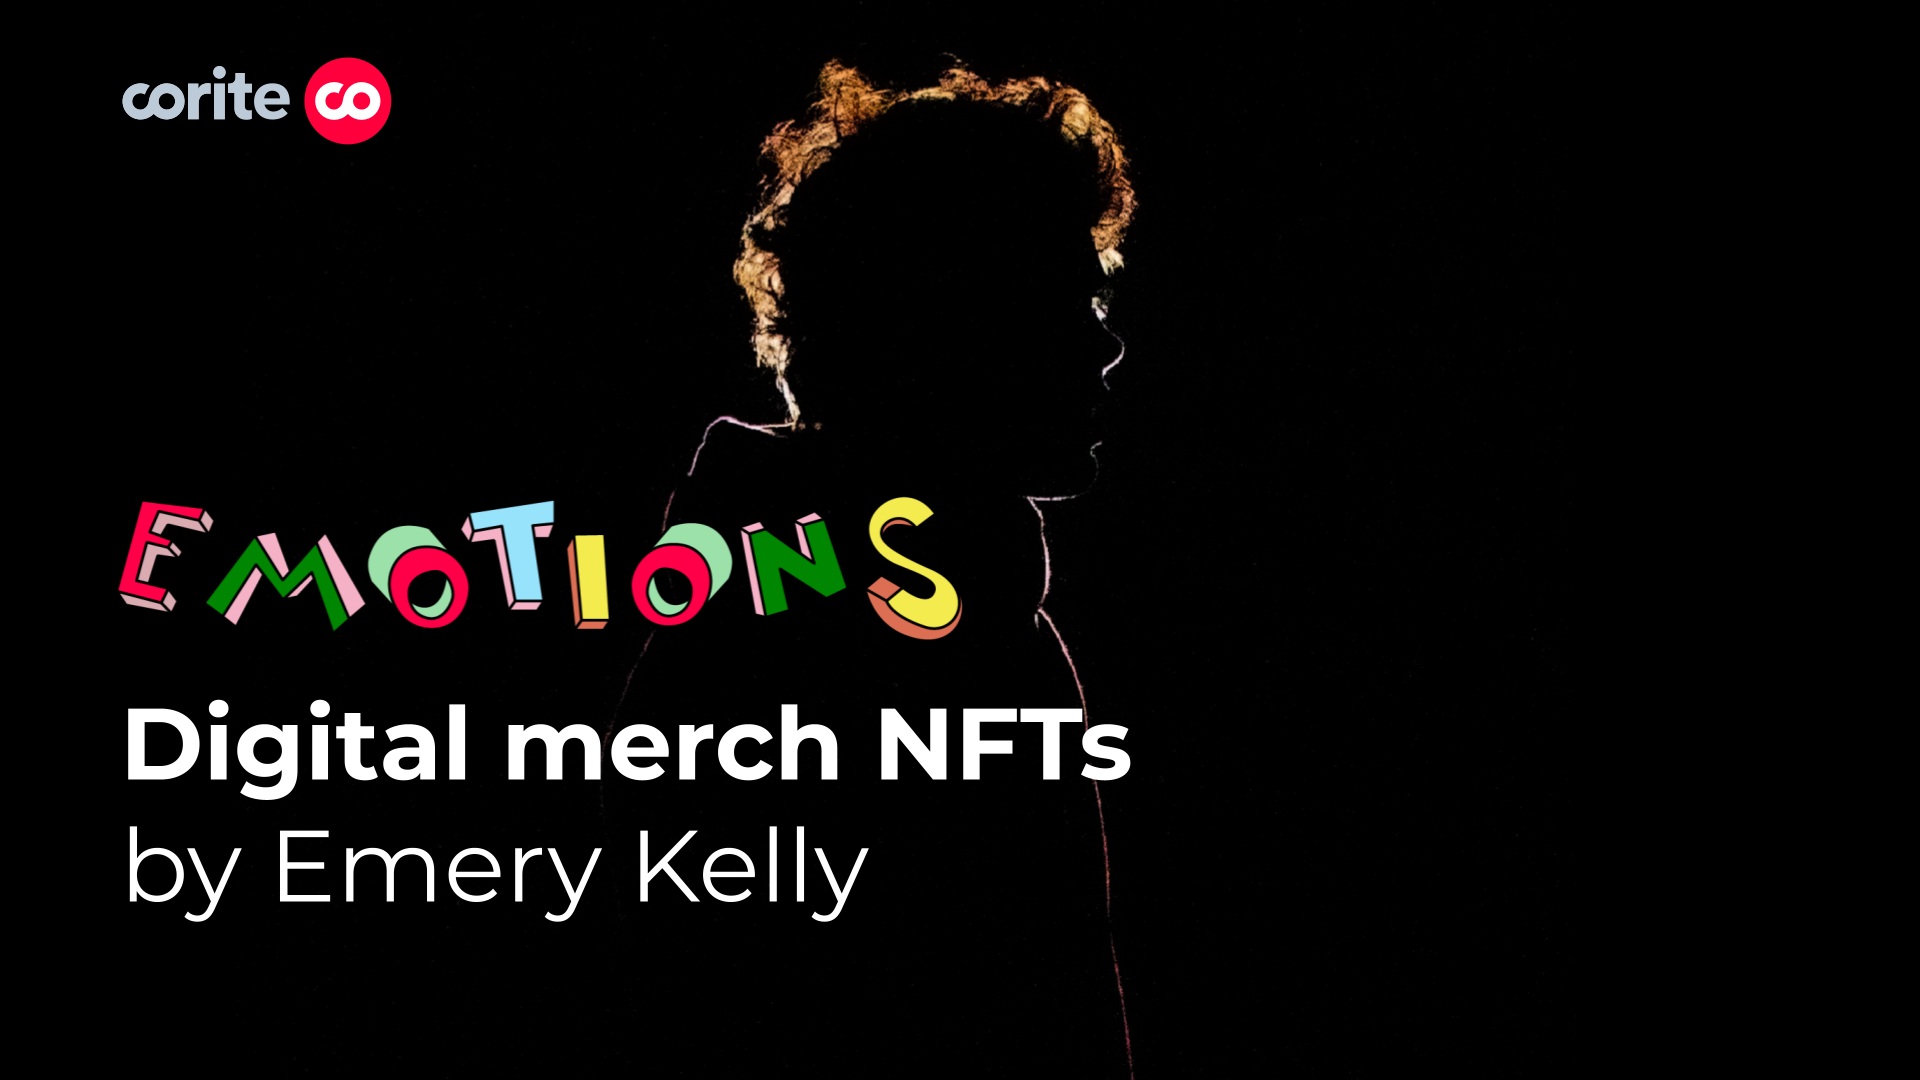 Corite ra mắt bộ sưu tập NFT ‘Emotions’ của Emery Kelly, khám phá cách thức kết hợp âm nhạc và hội họa